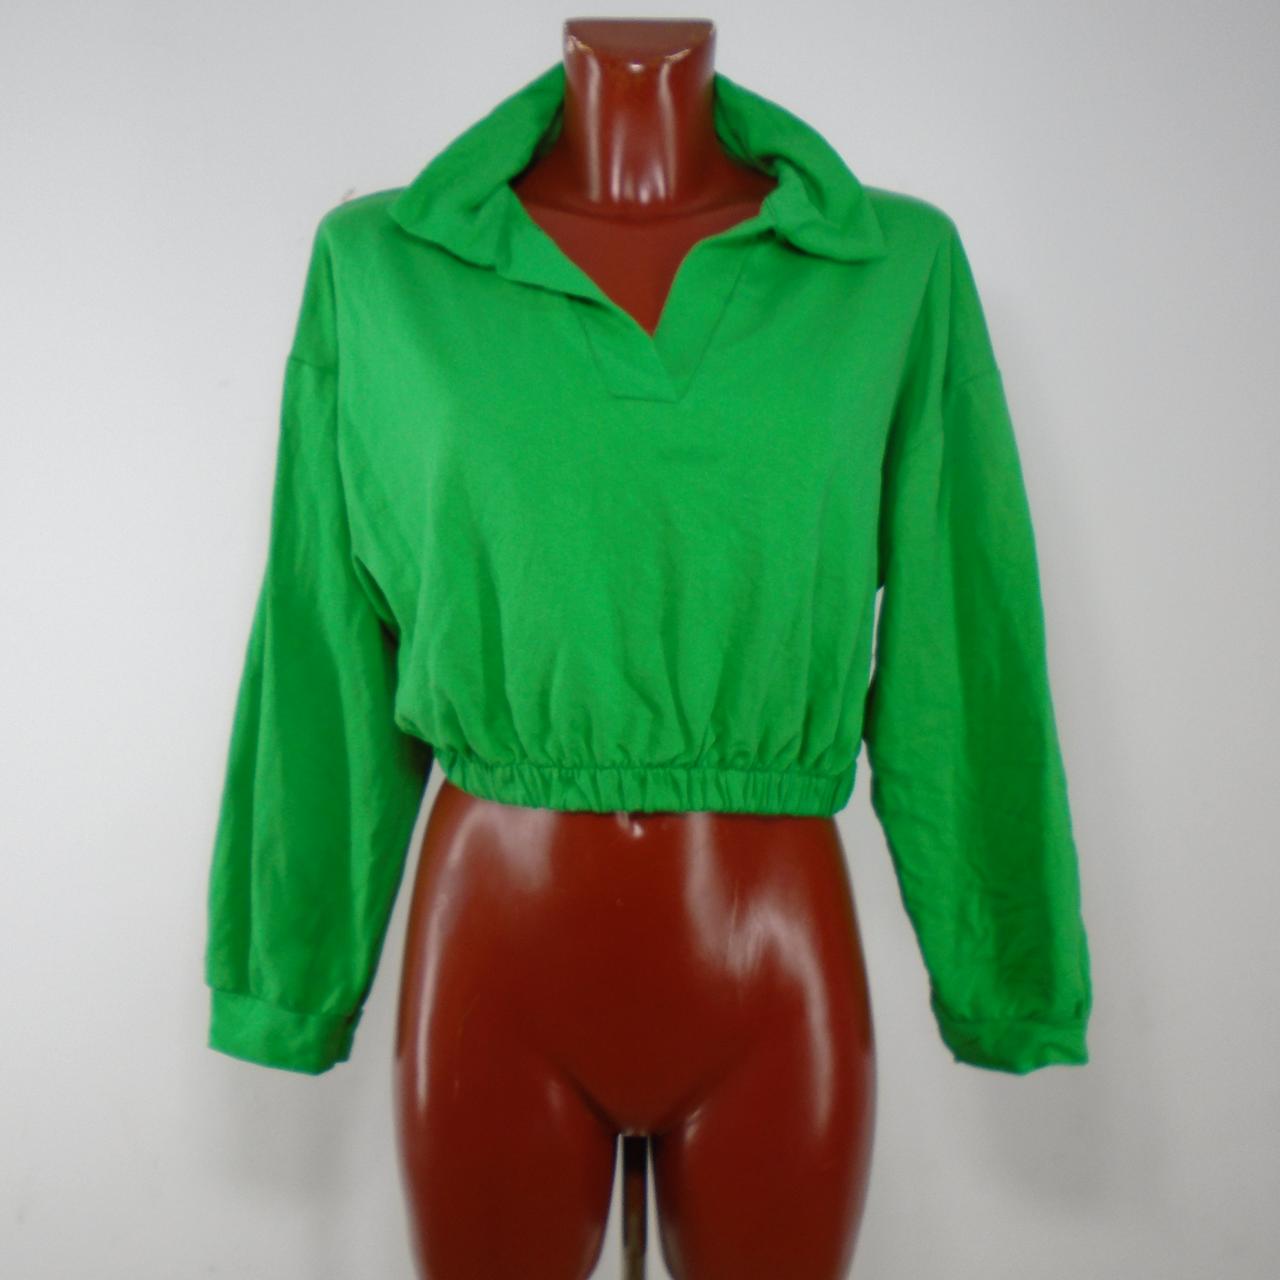 Blusa Mujer Amilia. Verde. M.Usado. Muy bien